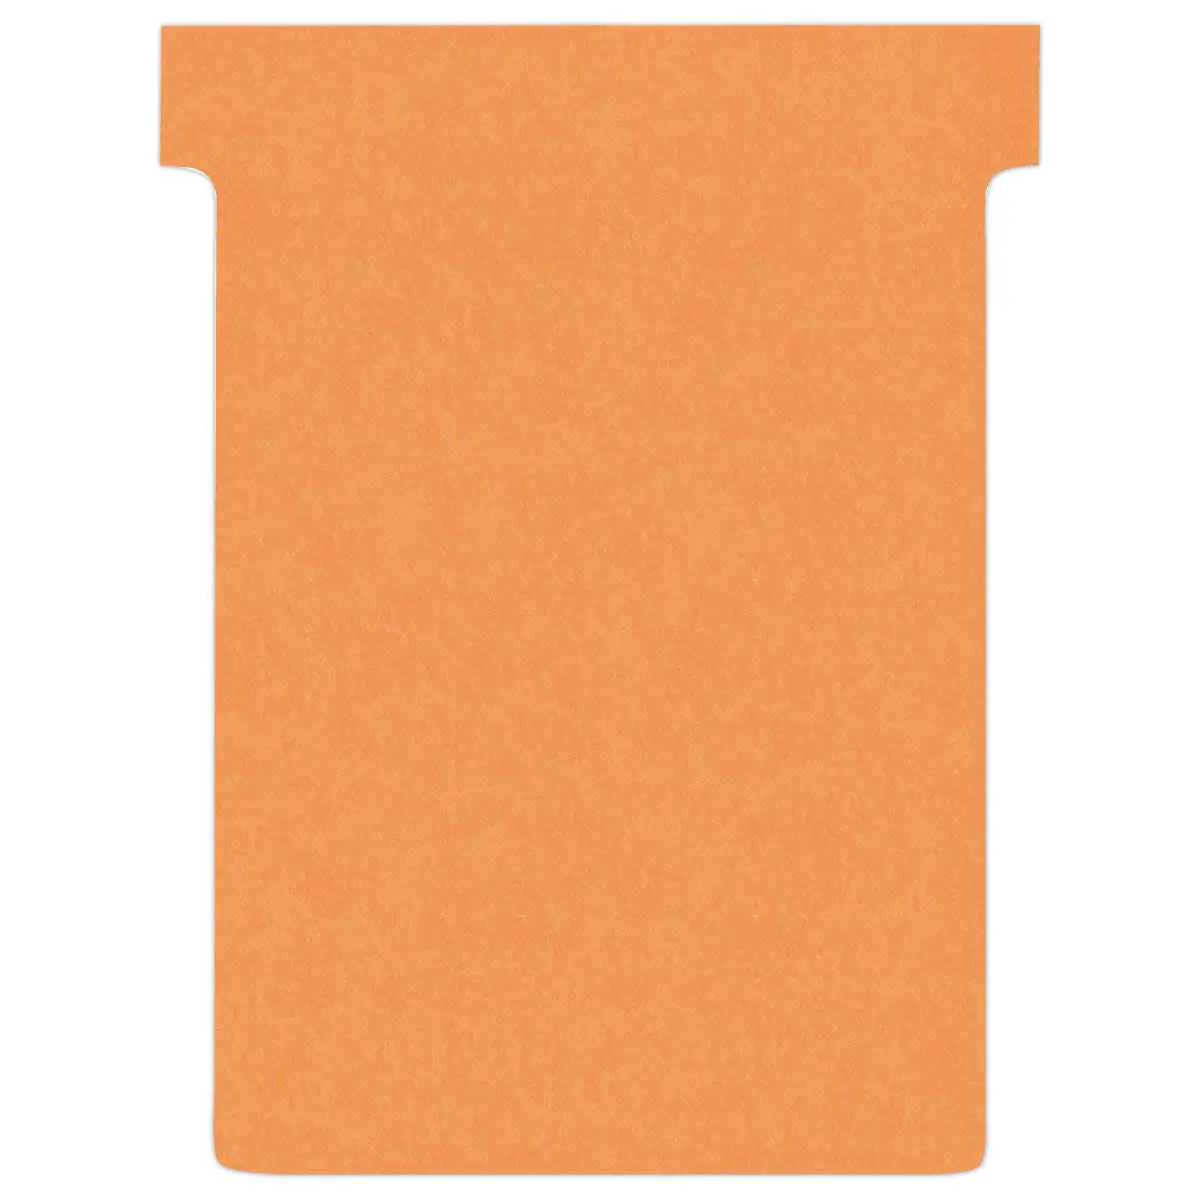 100 Fiches T pour planning - Taille 3 - Orange - NOBO photo du produit